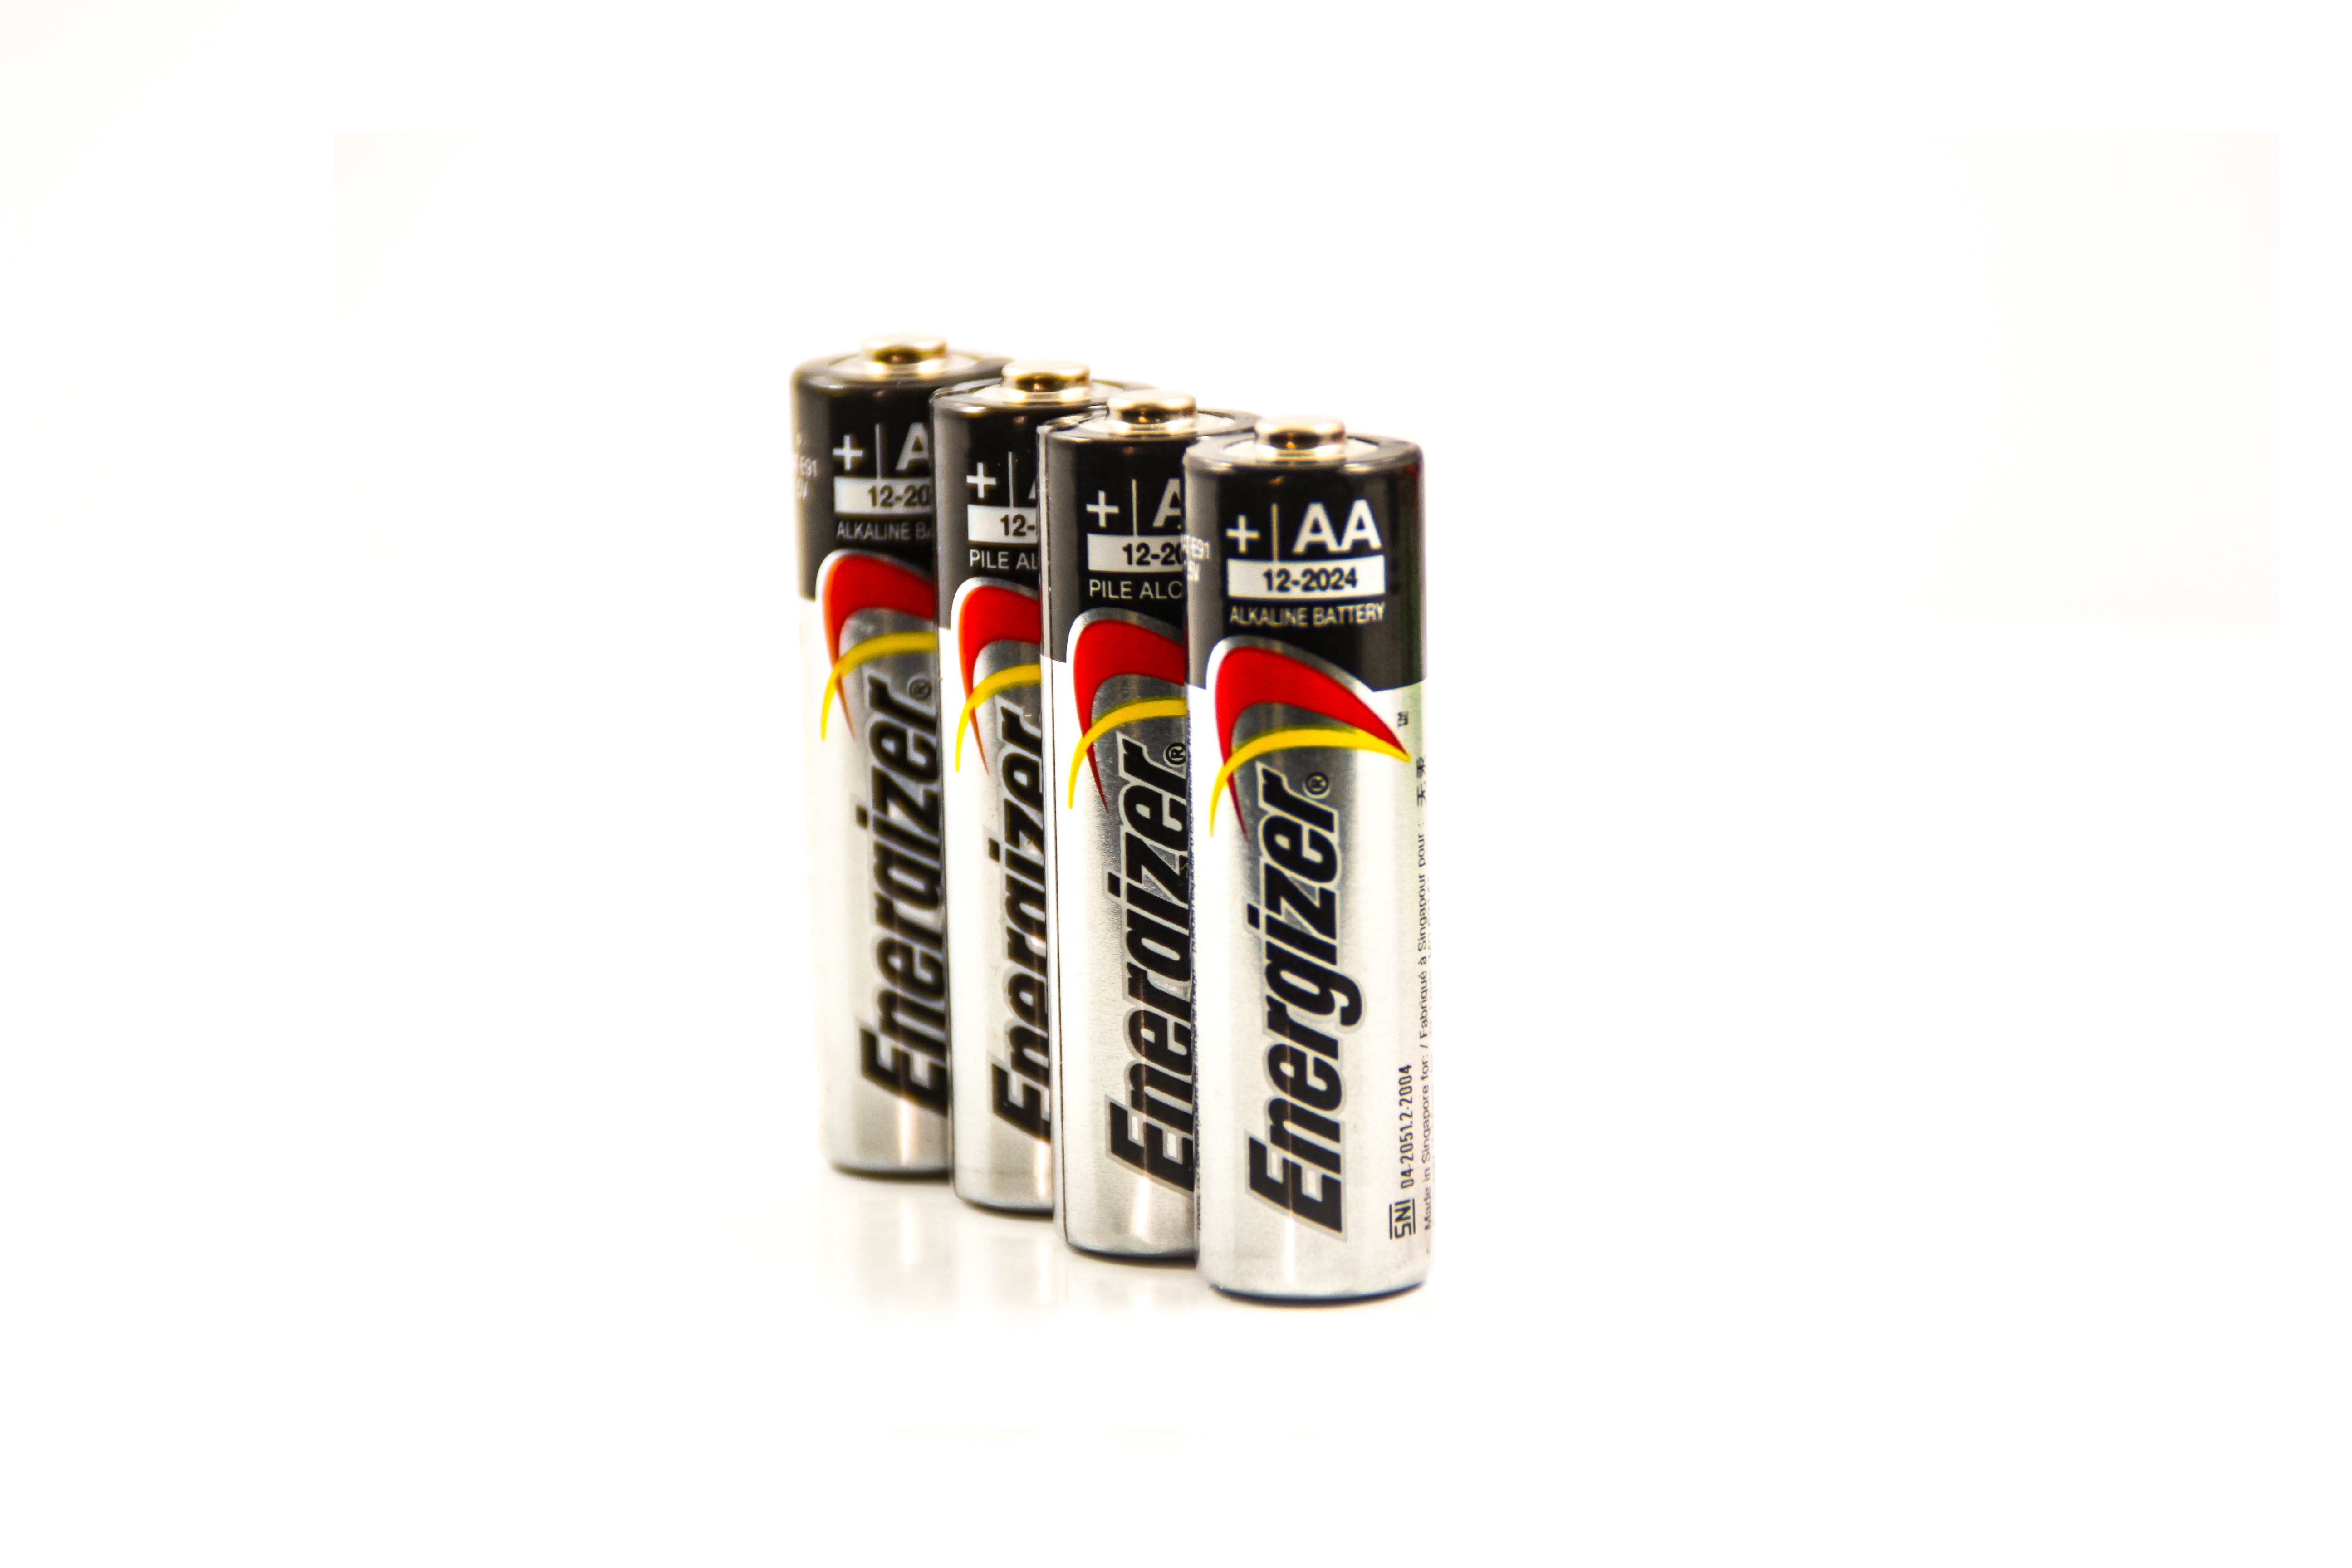 Батареи элементы питания. Батарейка (элемент а332 lr10). Батарейка на белом фоне. Изображение батарейки. Батарейка AAA на белом фоне.